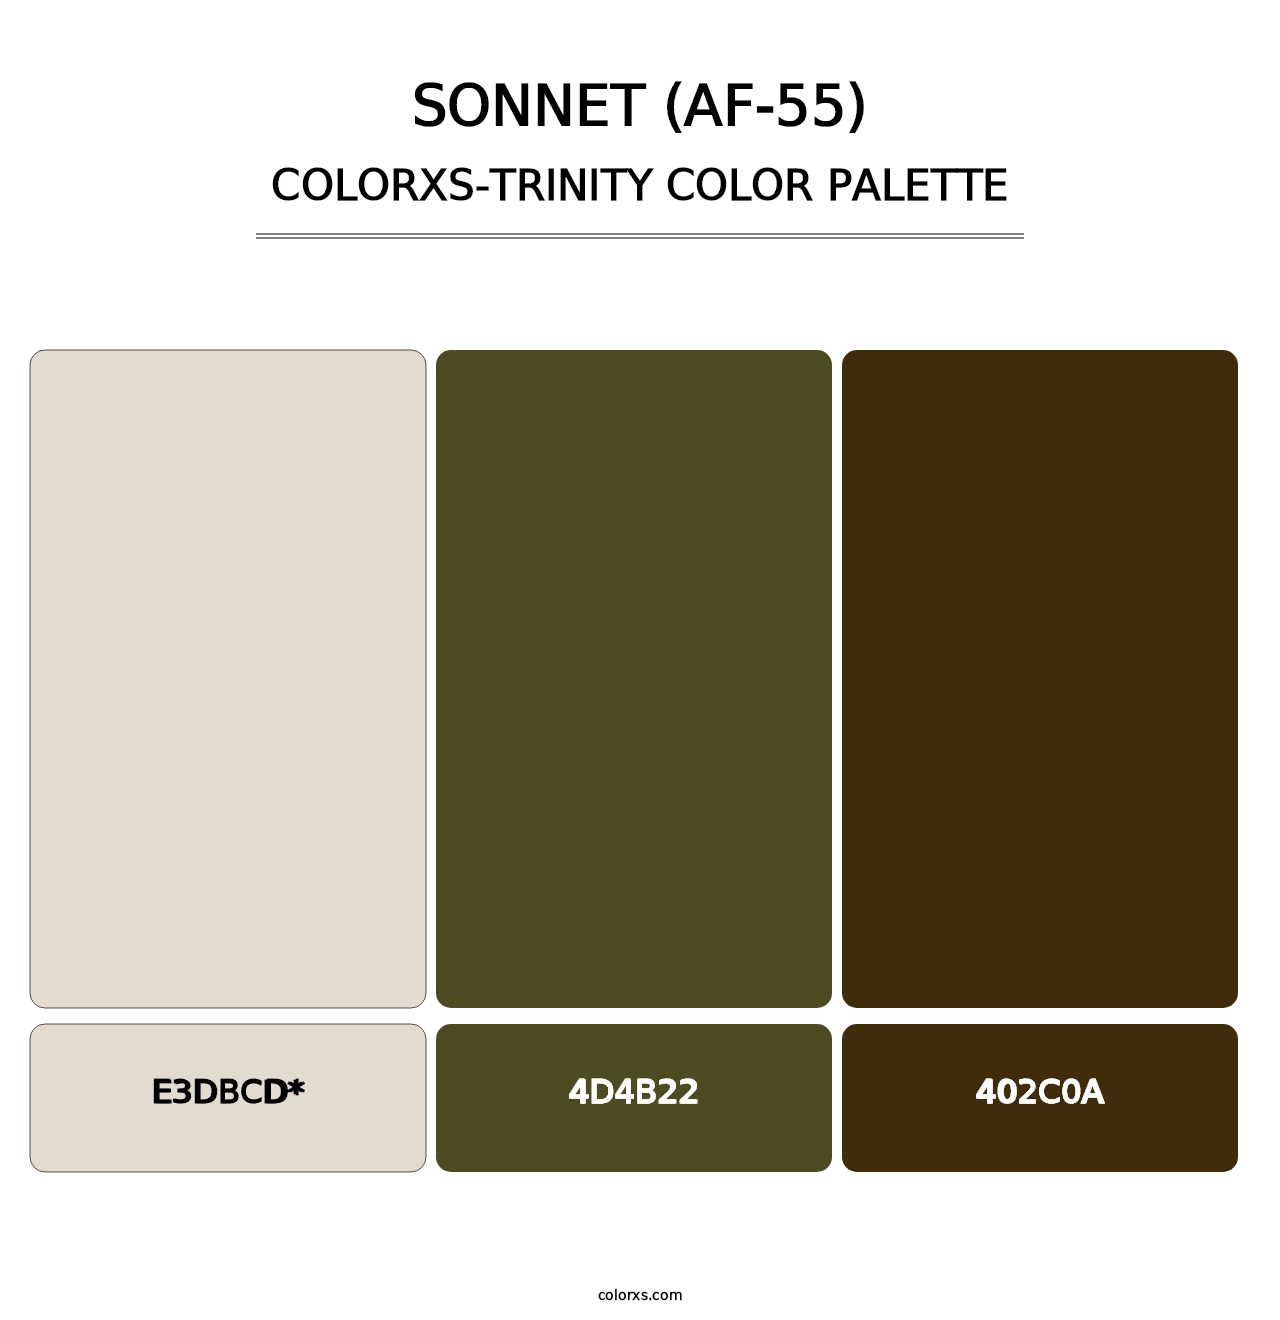 Sonnet (AF-55) - Colorxs Trinity Palette